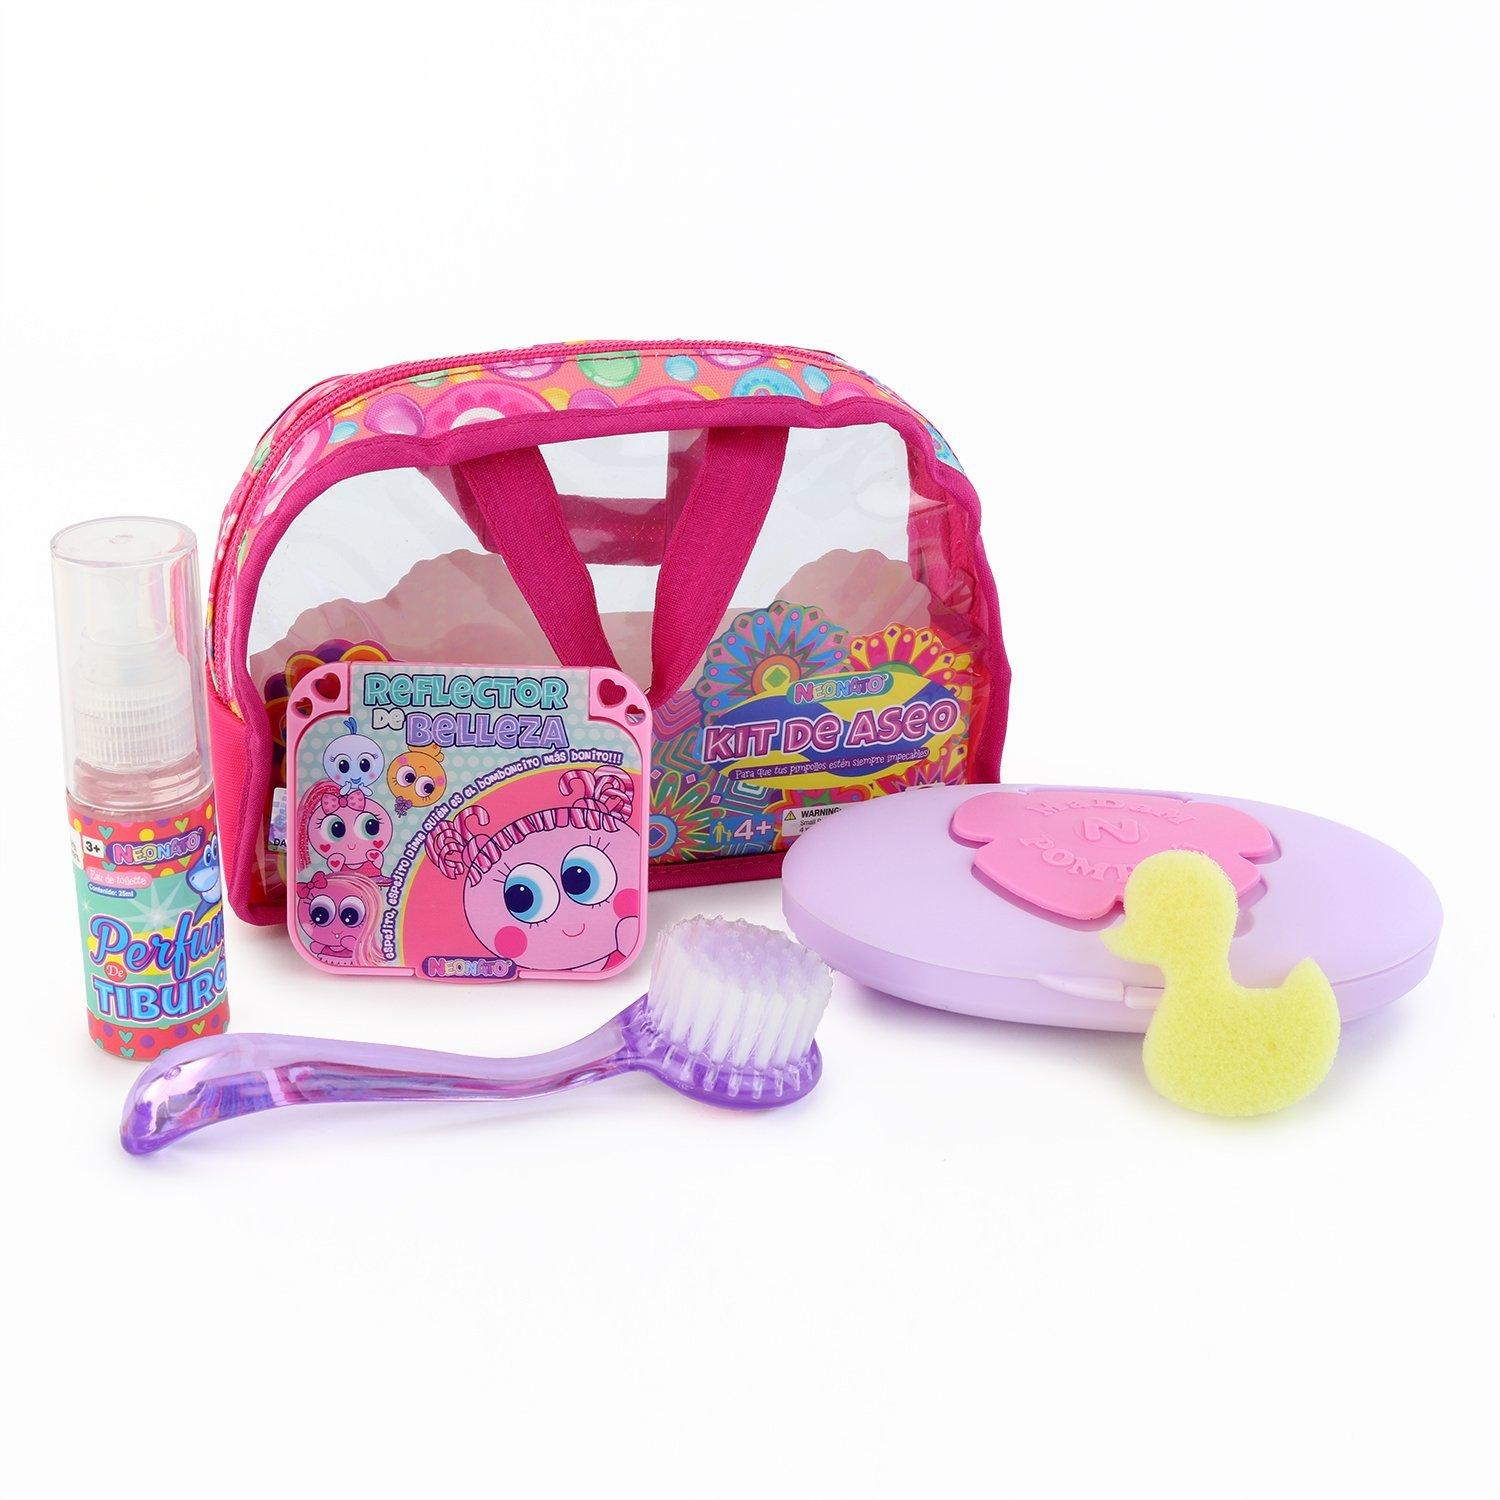 Ksimerito Neonate Nerlie Pink Pipirisnais Fantasy - Juego de accesorios de  ducha con toalla, esponja de estrella, champu, antibacteriano, colonia y